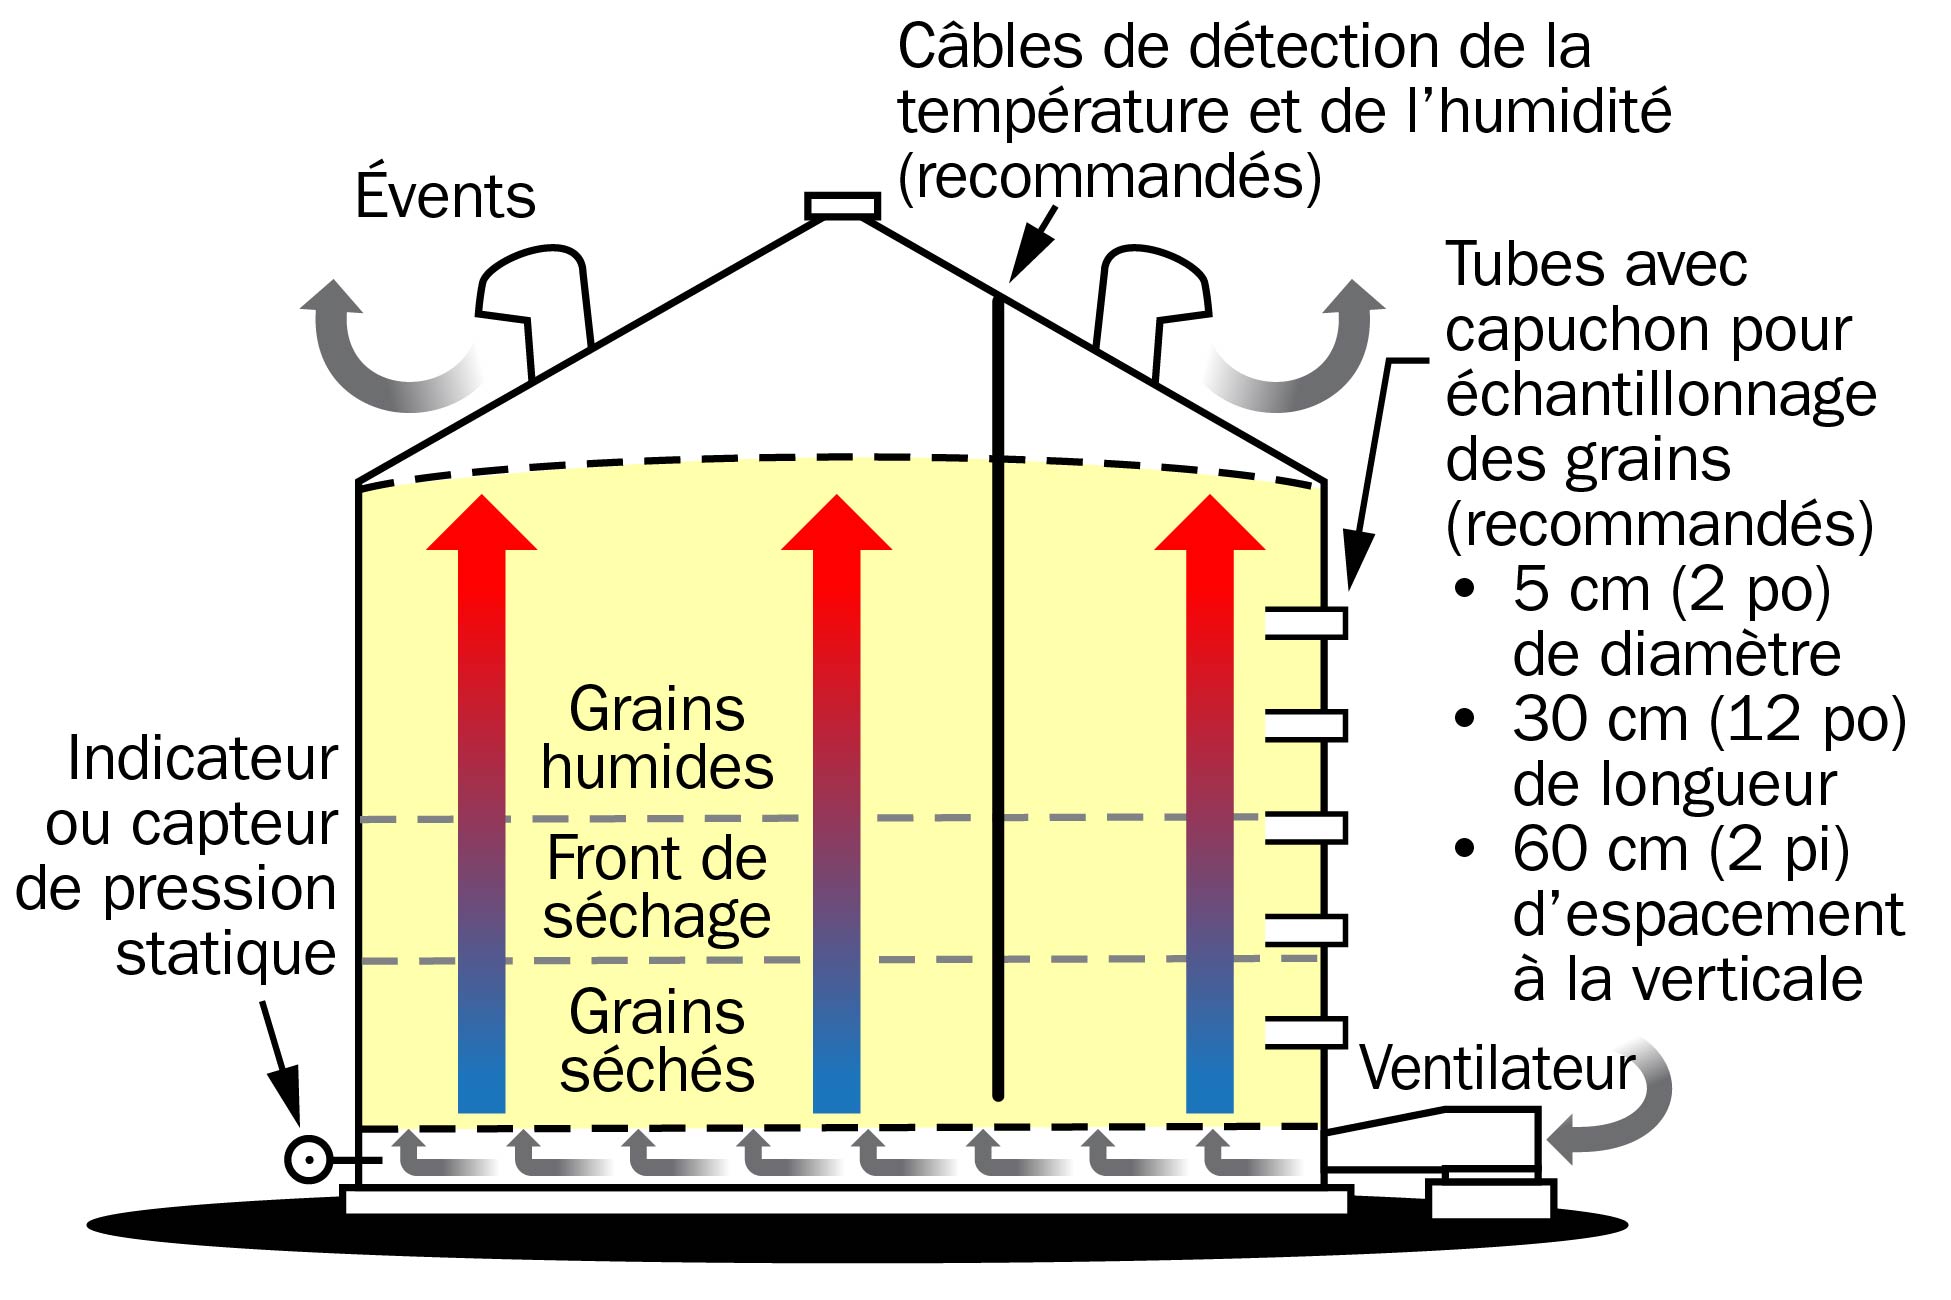 Le dessin représente des grains en train de sécher dans un silo. Les principaux éléments du silo utilisés pour le séchage sont étiquetés. Les grains sèchent dans un « front de séchage », c’est-à-dire une couche de grains qui se déplace vers le haut à mesure que les grains sèchent. Les grains situés sous ce front sont secs et les grains qui sont au-dessus sont encore humides.